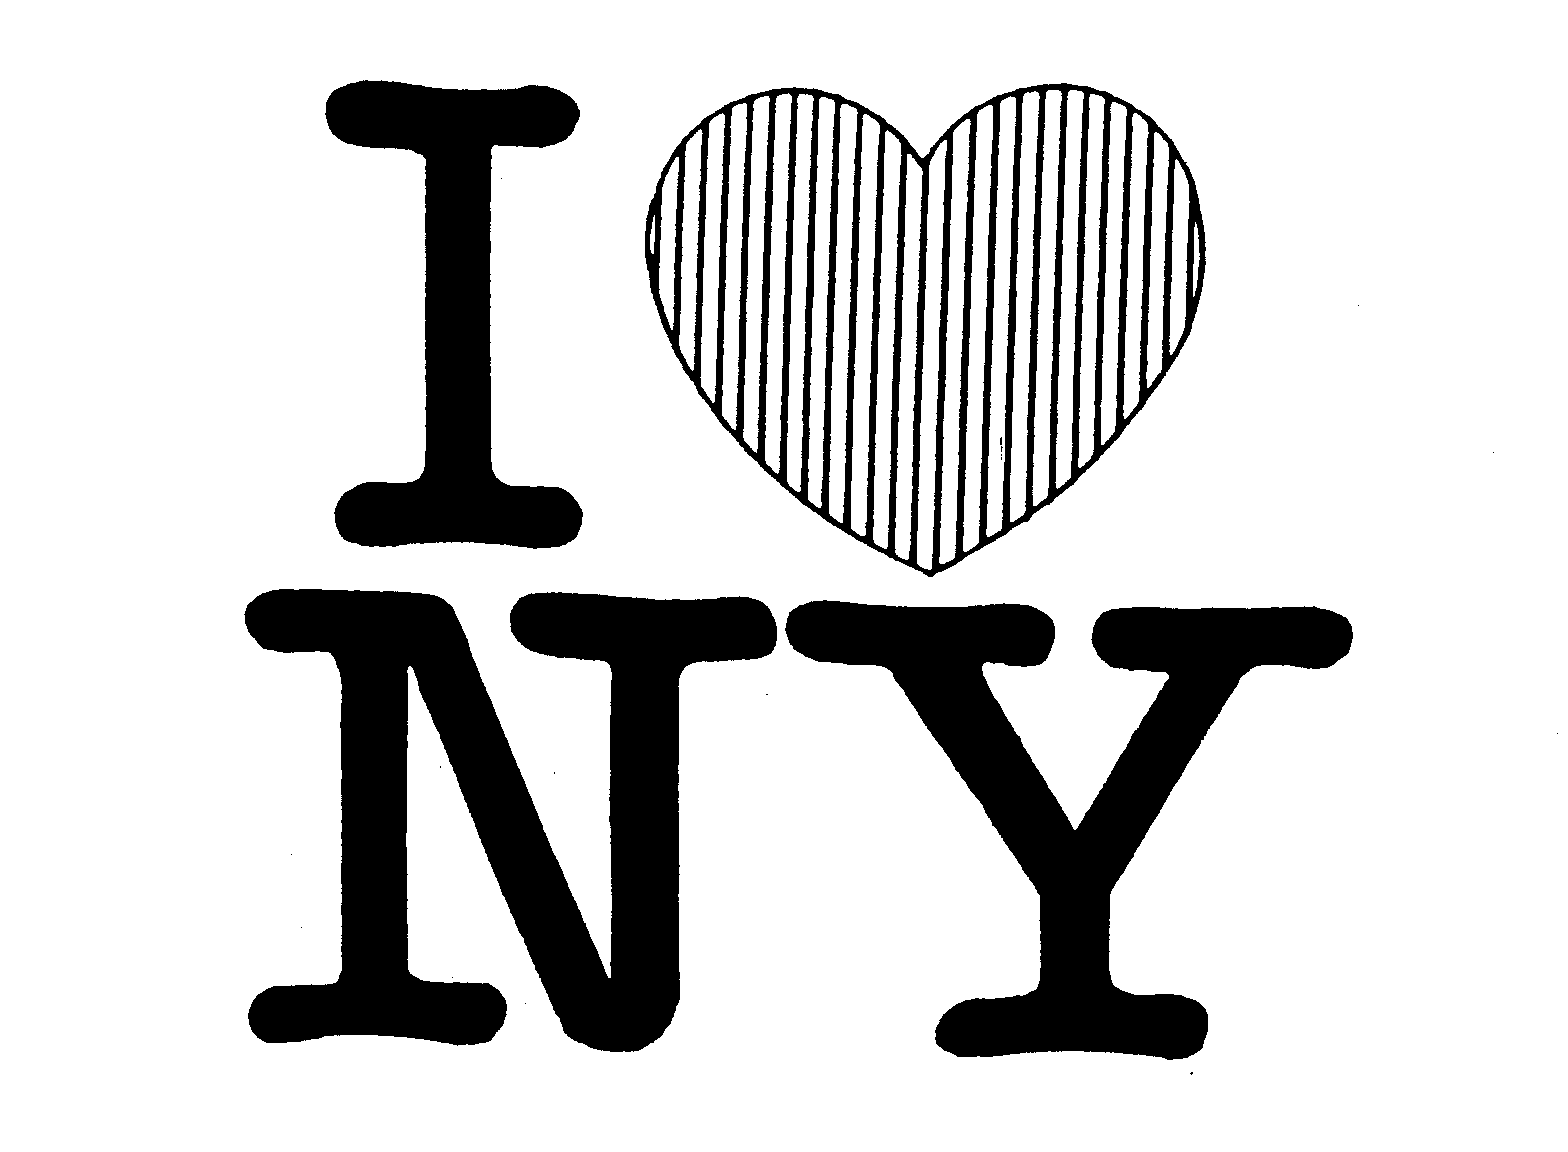 Trademark Logo I NY